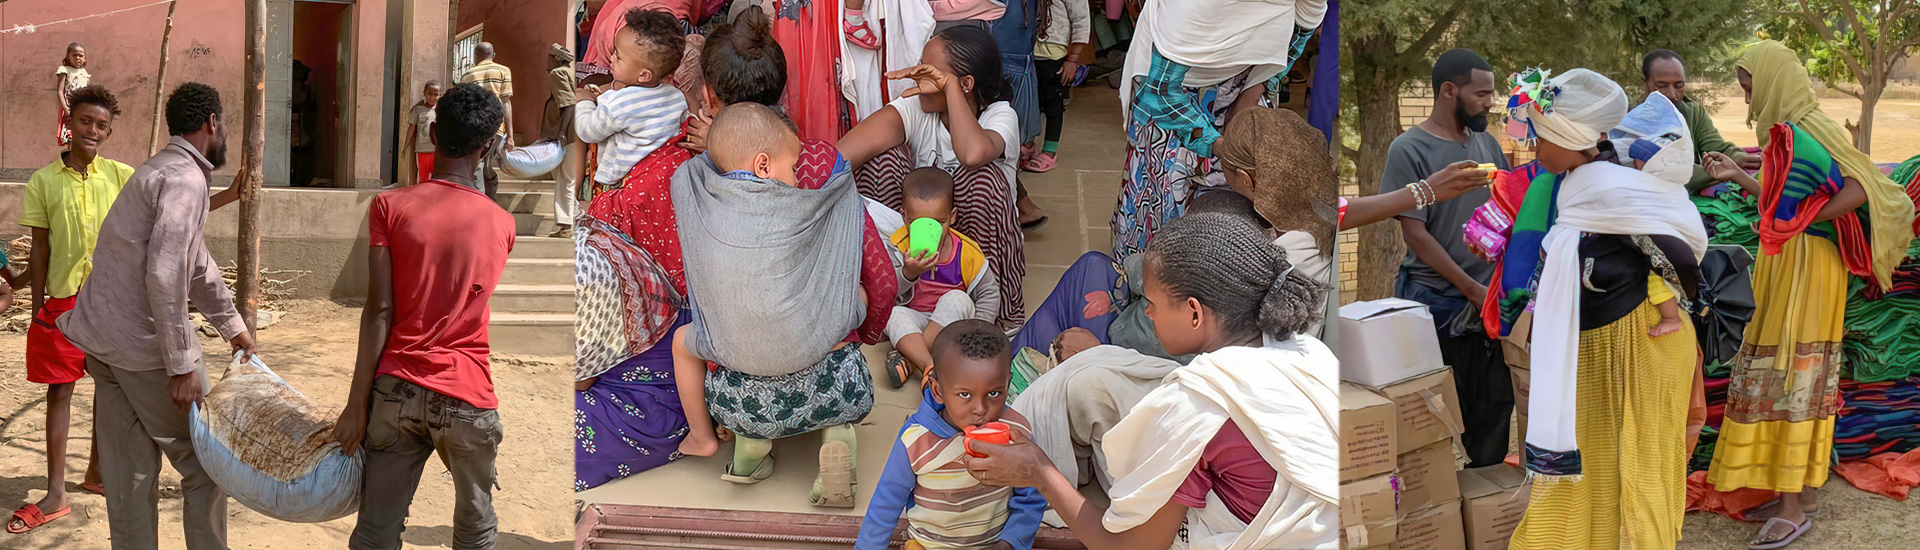 La sequía y la guerra en Etiopía hace que haya personas que estén muriendo por falta de alimentos